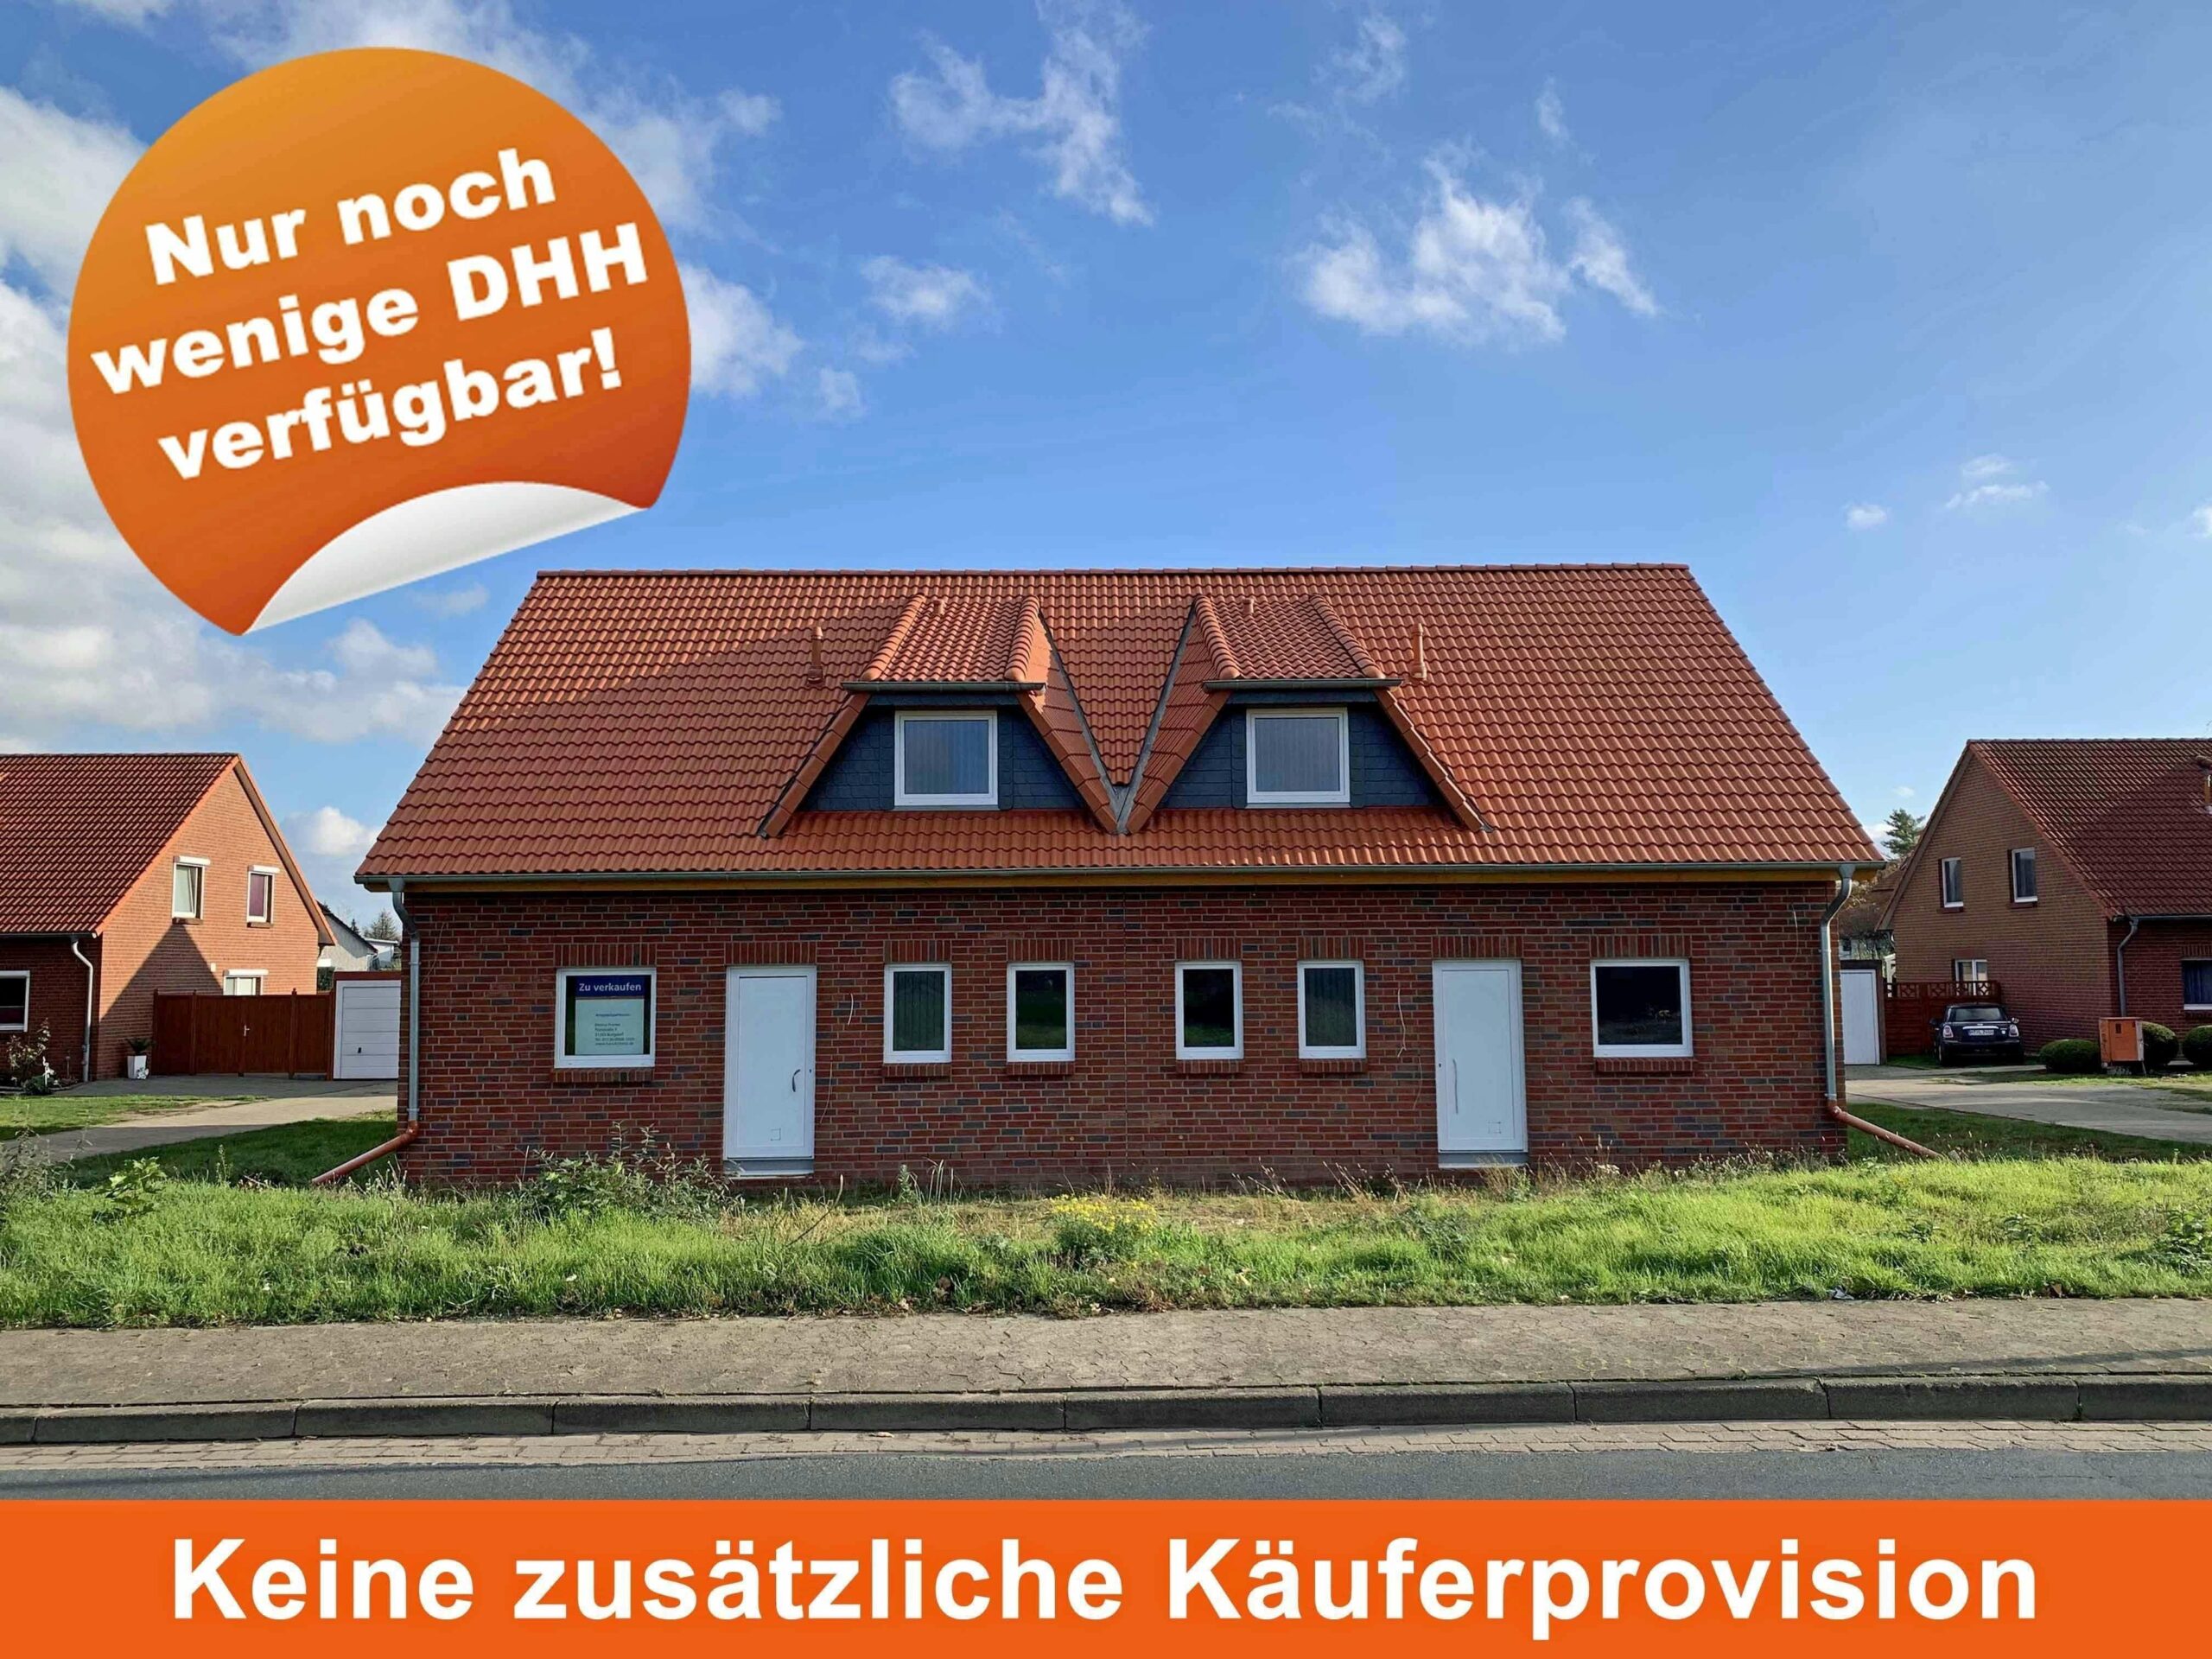 6 Neubau Doppelhaushälften in toller Lage von Uetze, 31311 Uetze, Doppelhaushälfte